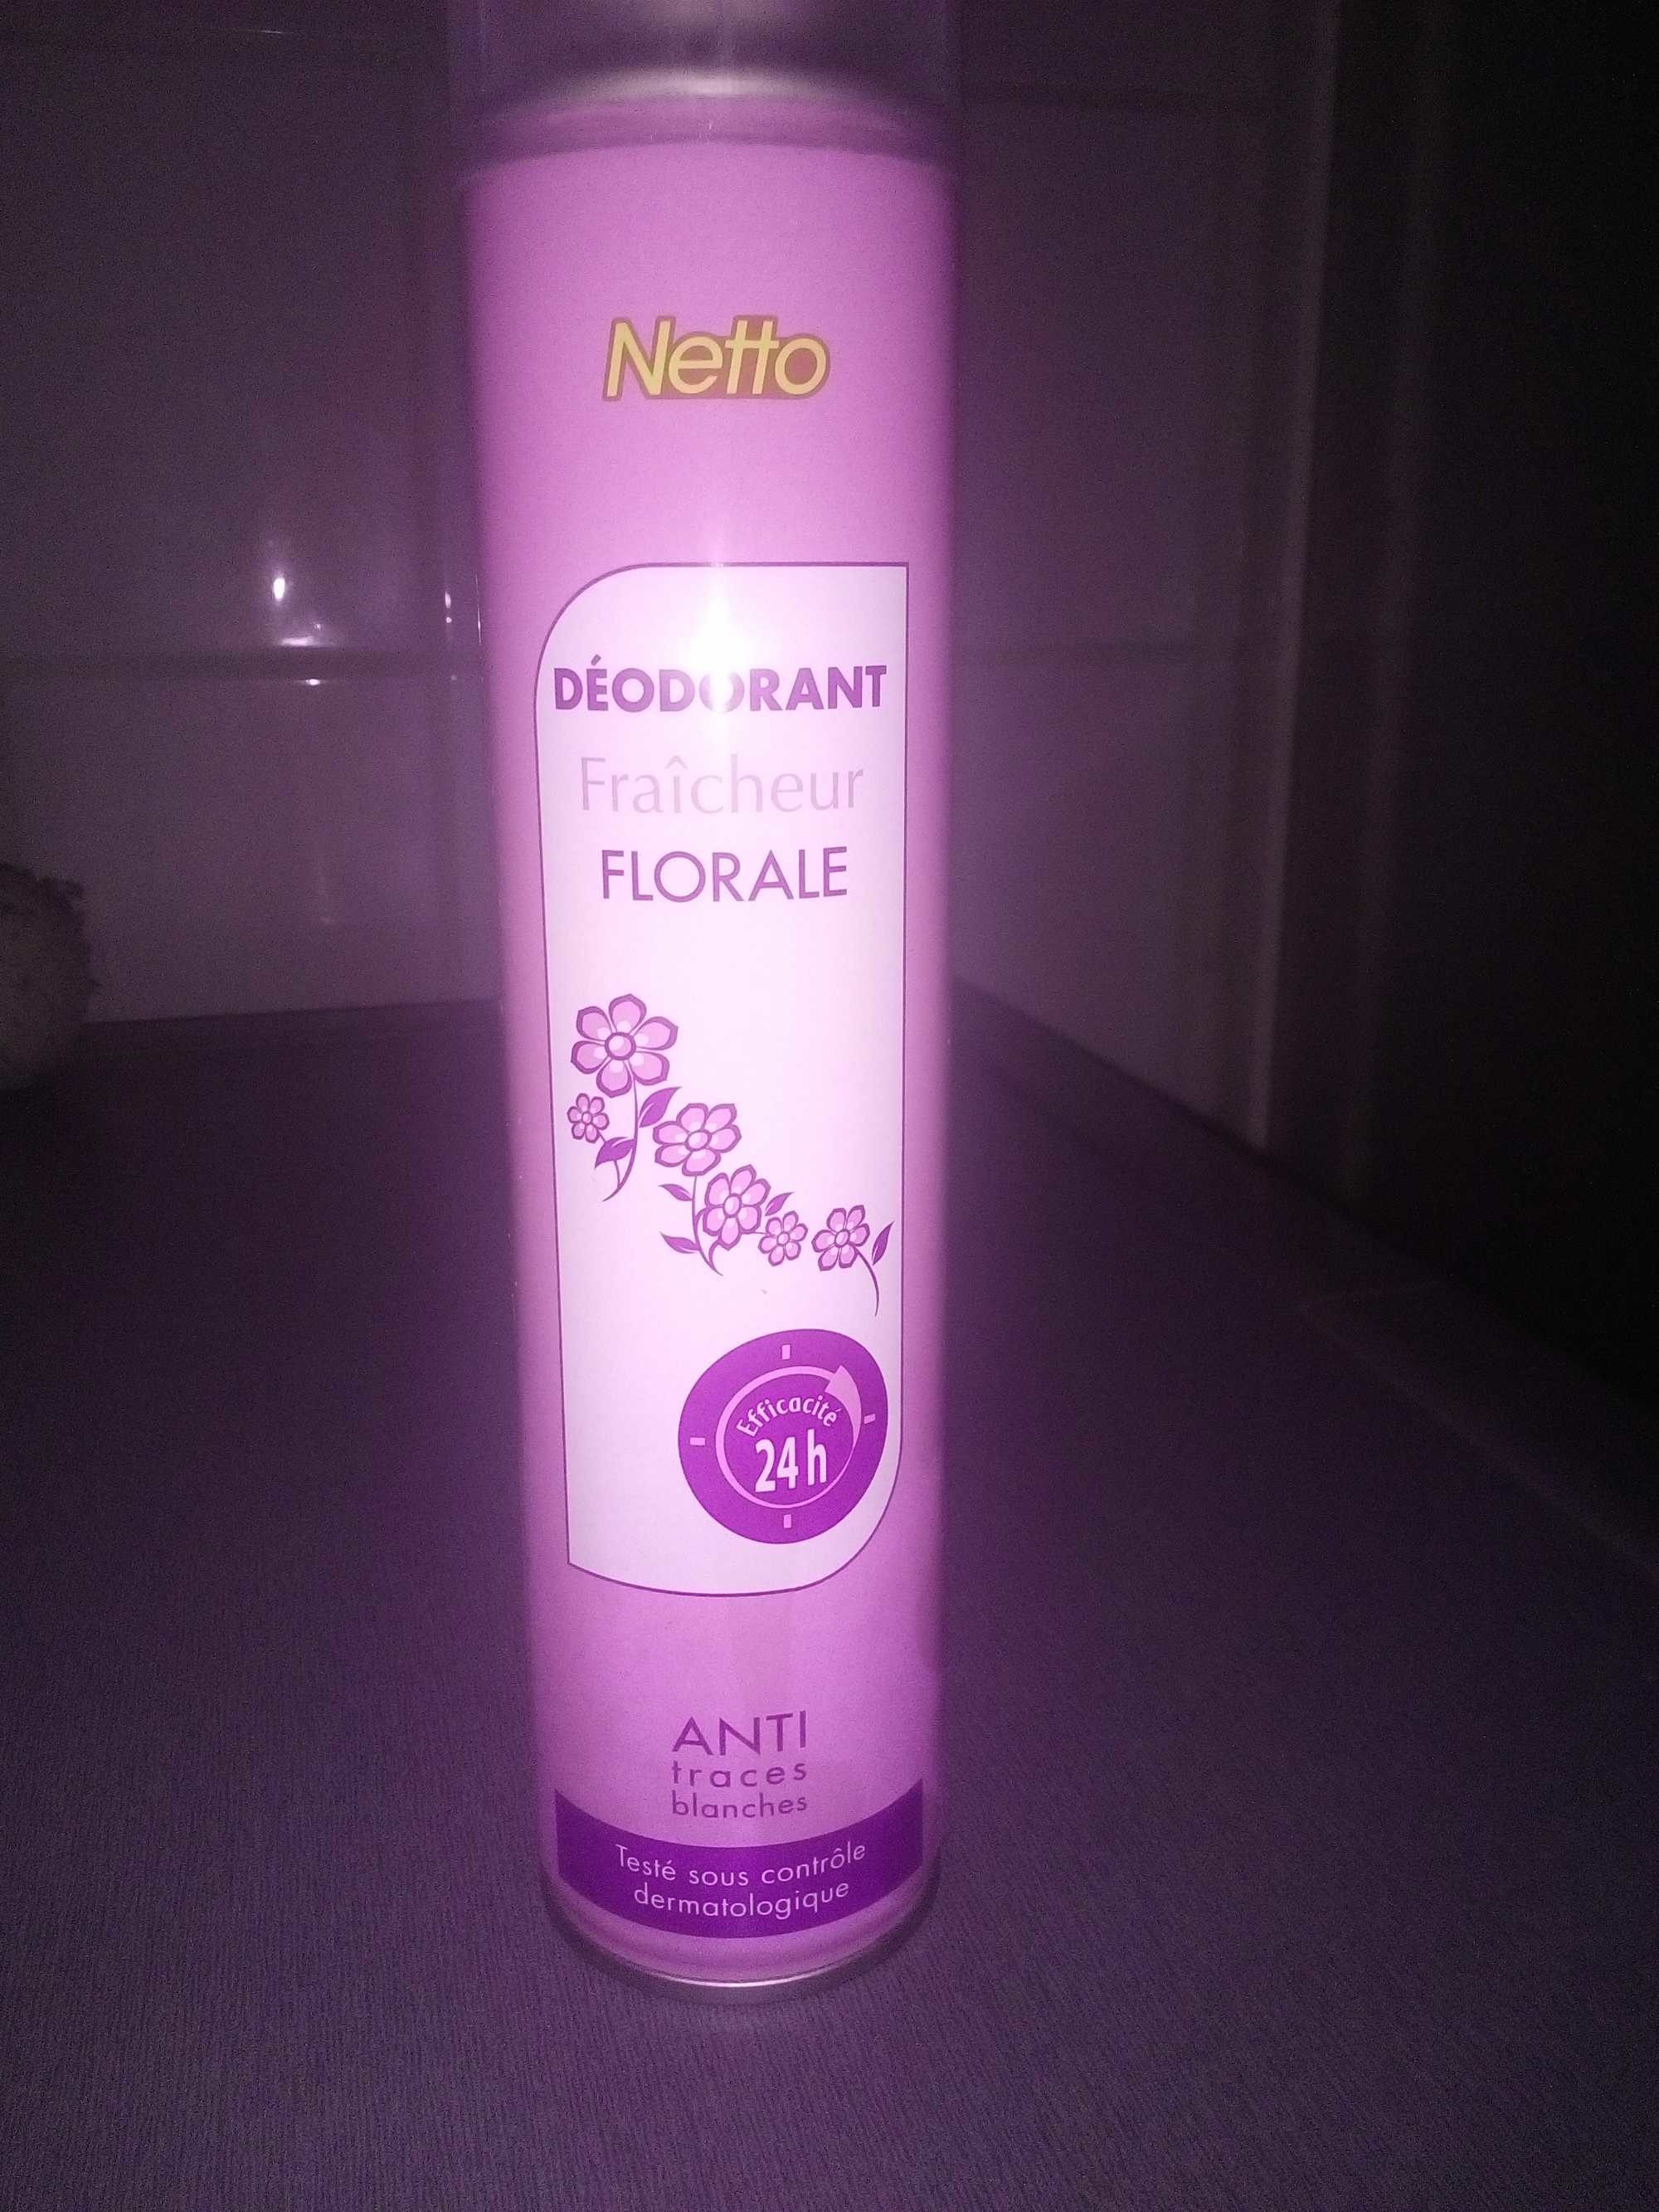 Déodorant fraîcheur florale - Produit - fr